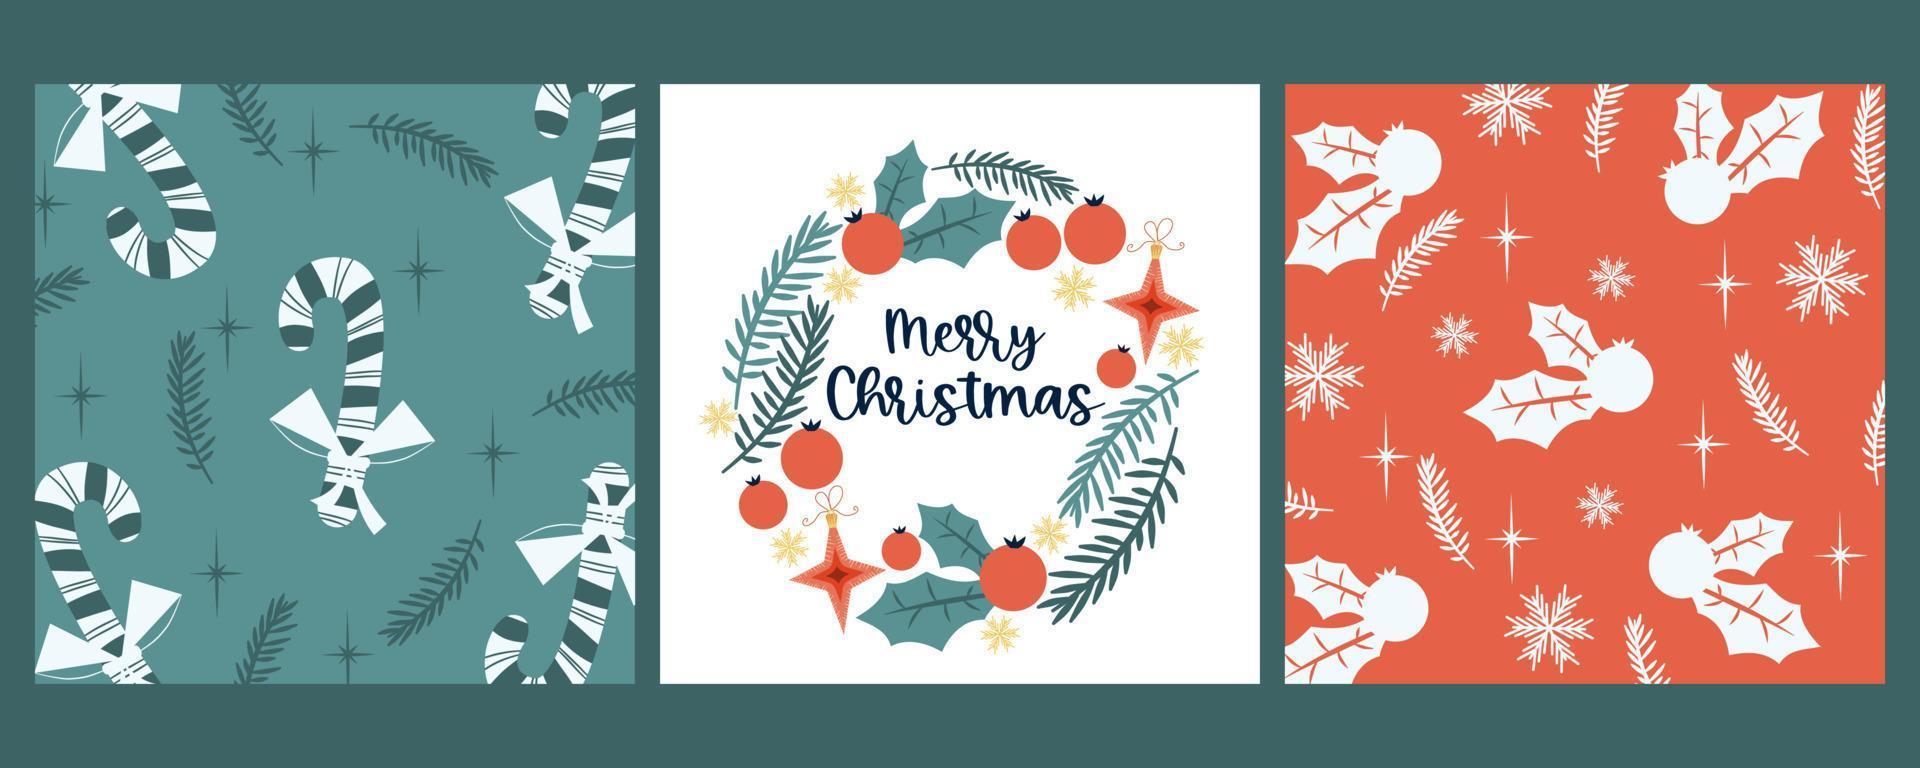 set kerst vintage covers voor felicitaties.sjabloon met lolly, hulst, frame met gefeliciteerd tekst. vectorillustratie in retro vlakke stijl. vector